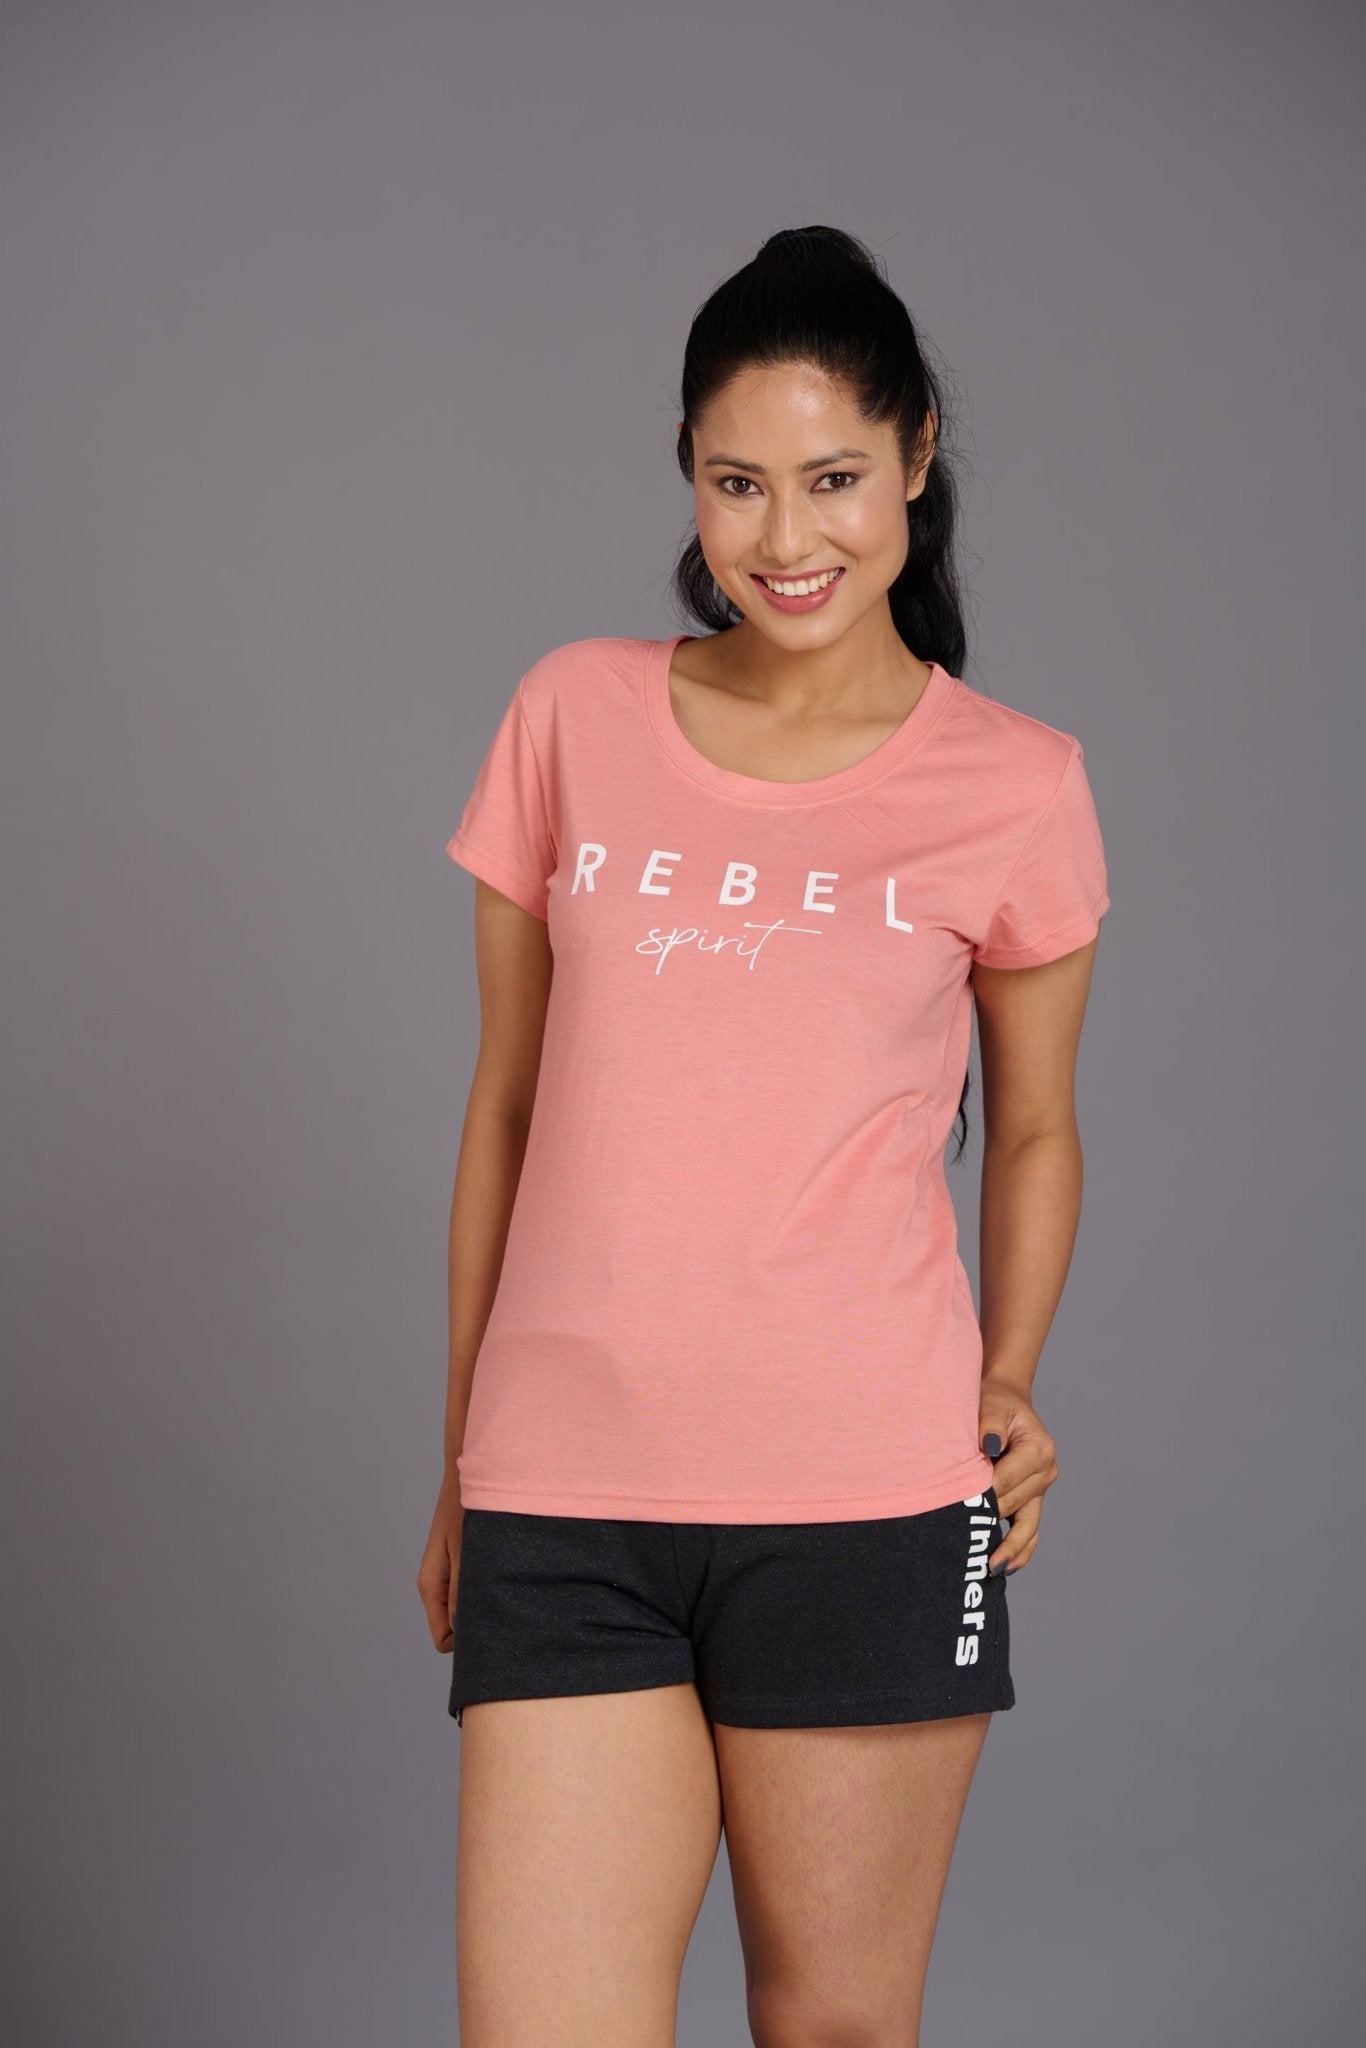 Rebel Spirit Printed Oversized T-Shirt for Women - Go Devil